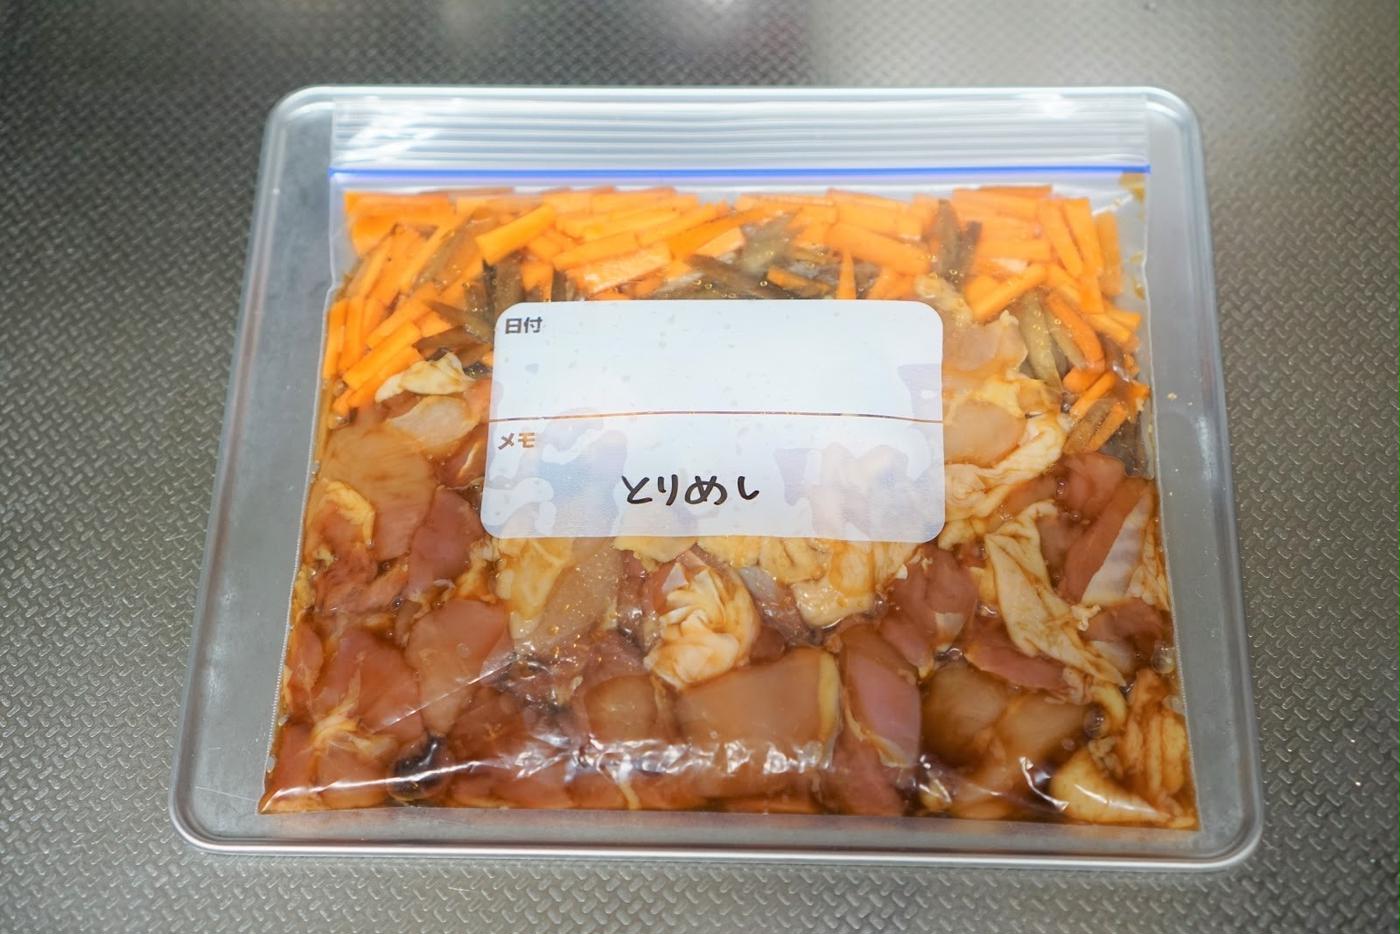 連載 節約上手ママ直伝 Hachiの下味冷凍で時短 節約レシピvol 1 鶏もも肉編 トクバイニュース